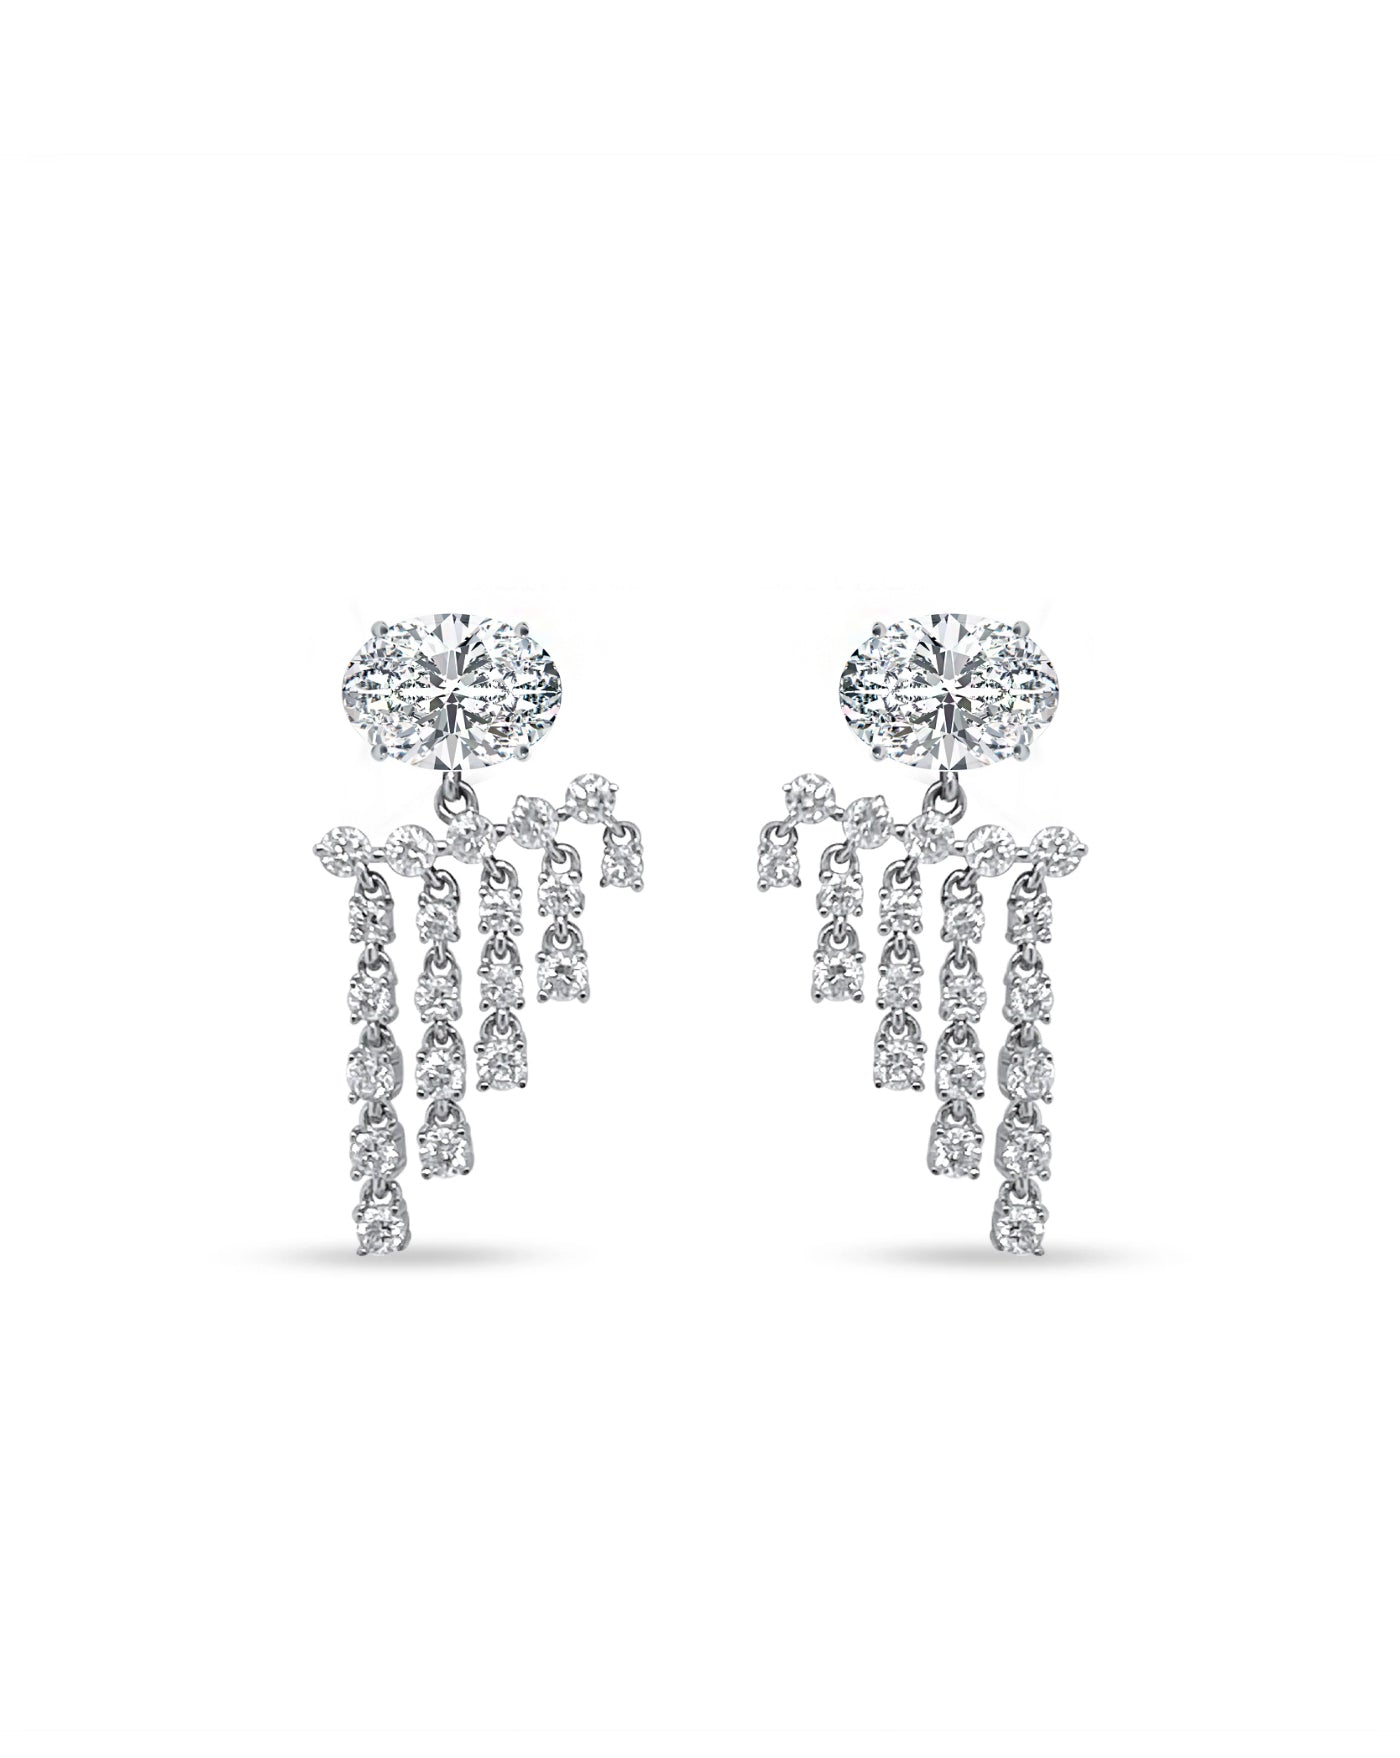 Fringe Diamond Earrings | Oval Cut 1.5ct LAB Diamond